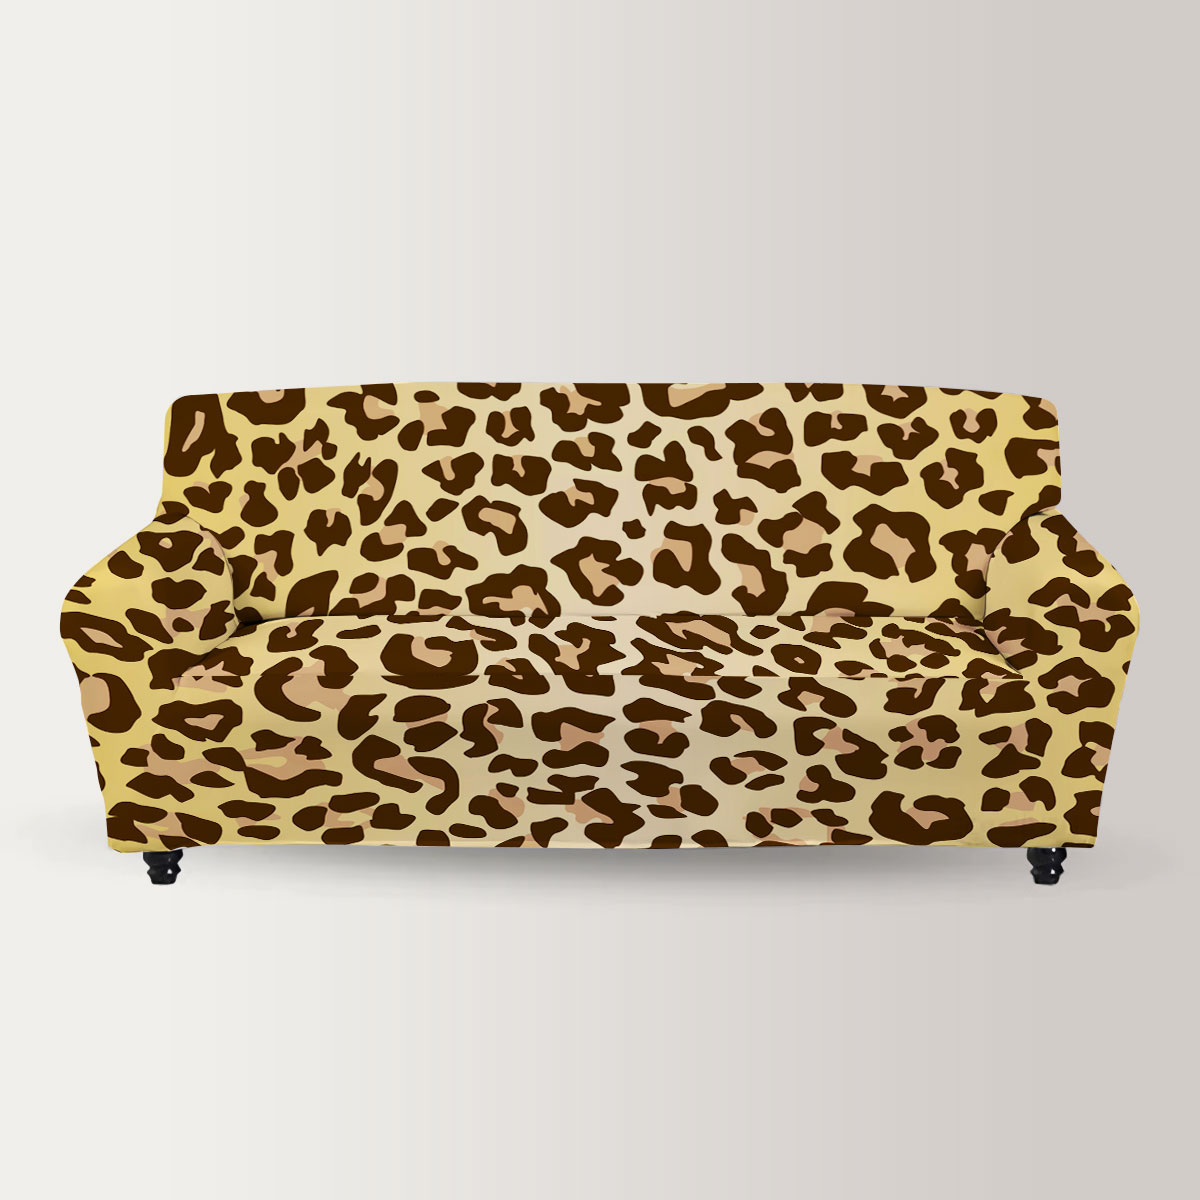 Jaguar Skin Sofa Cover